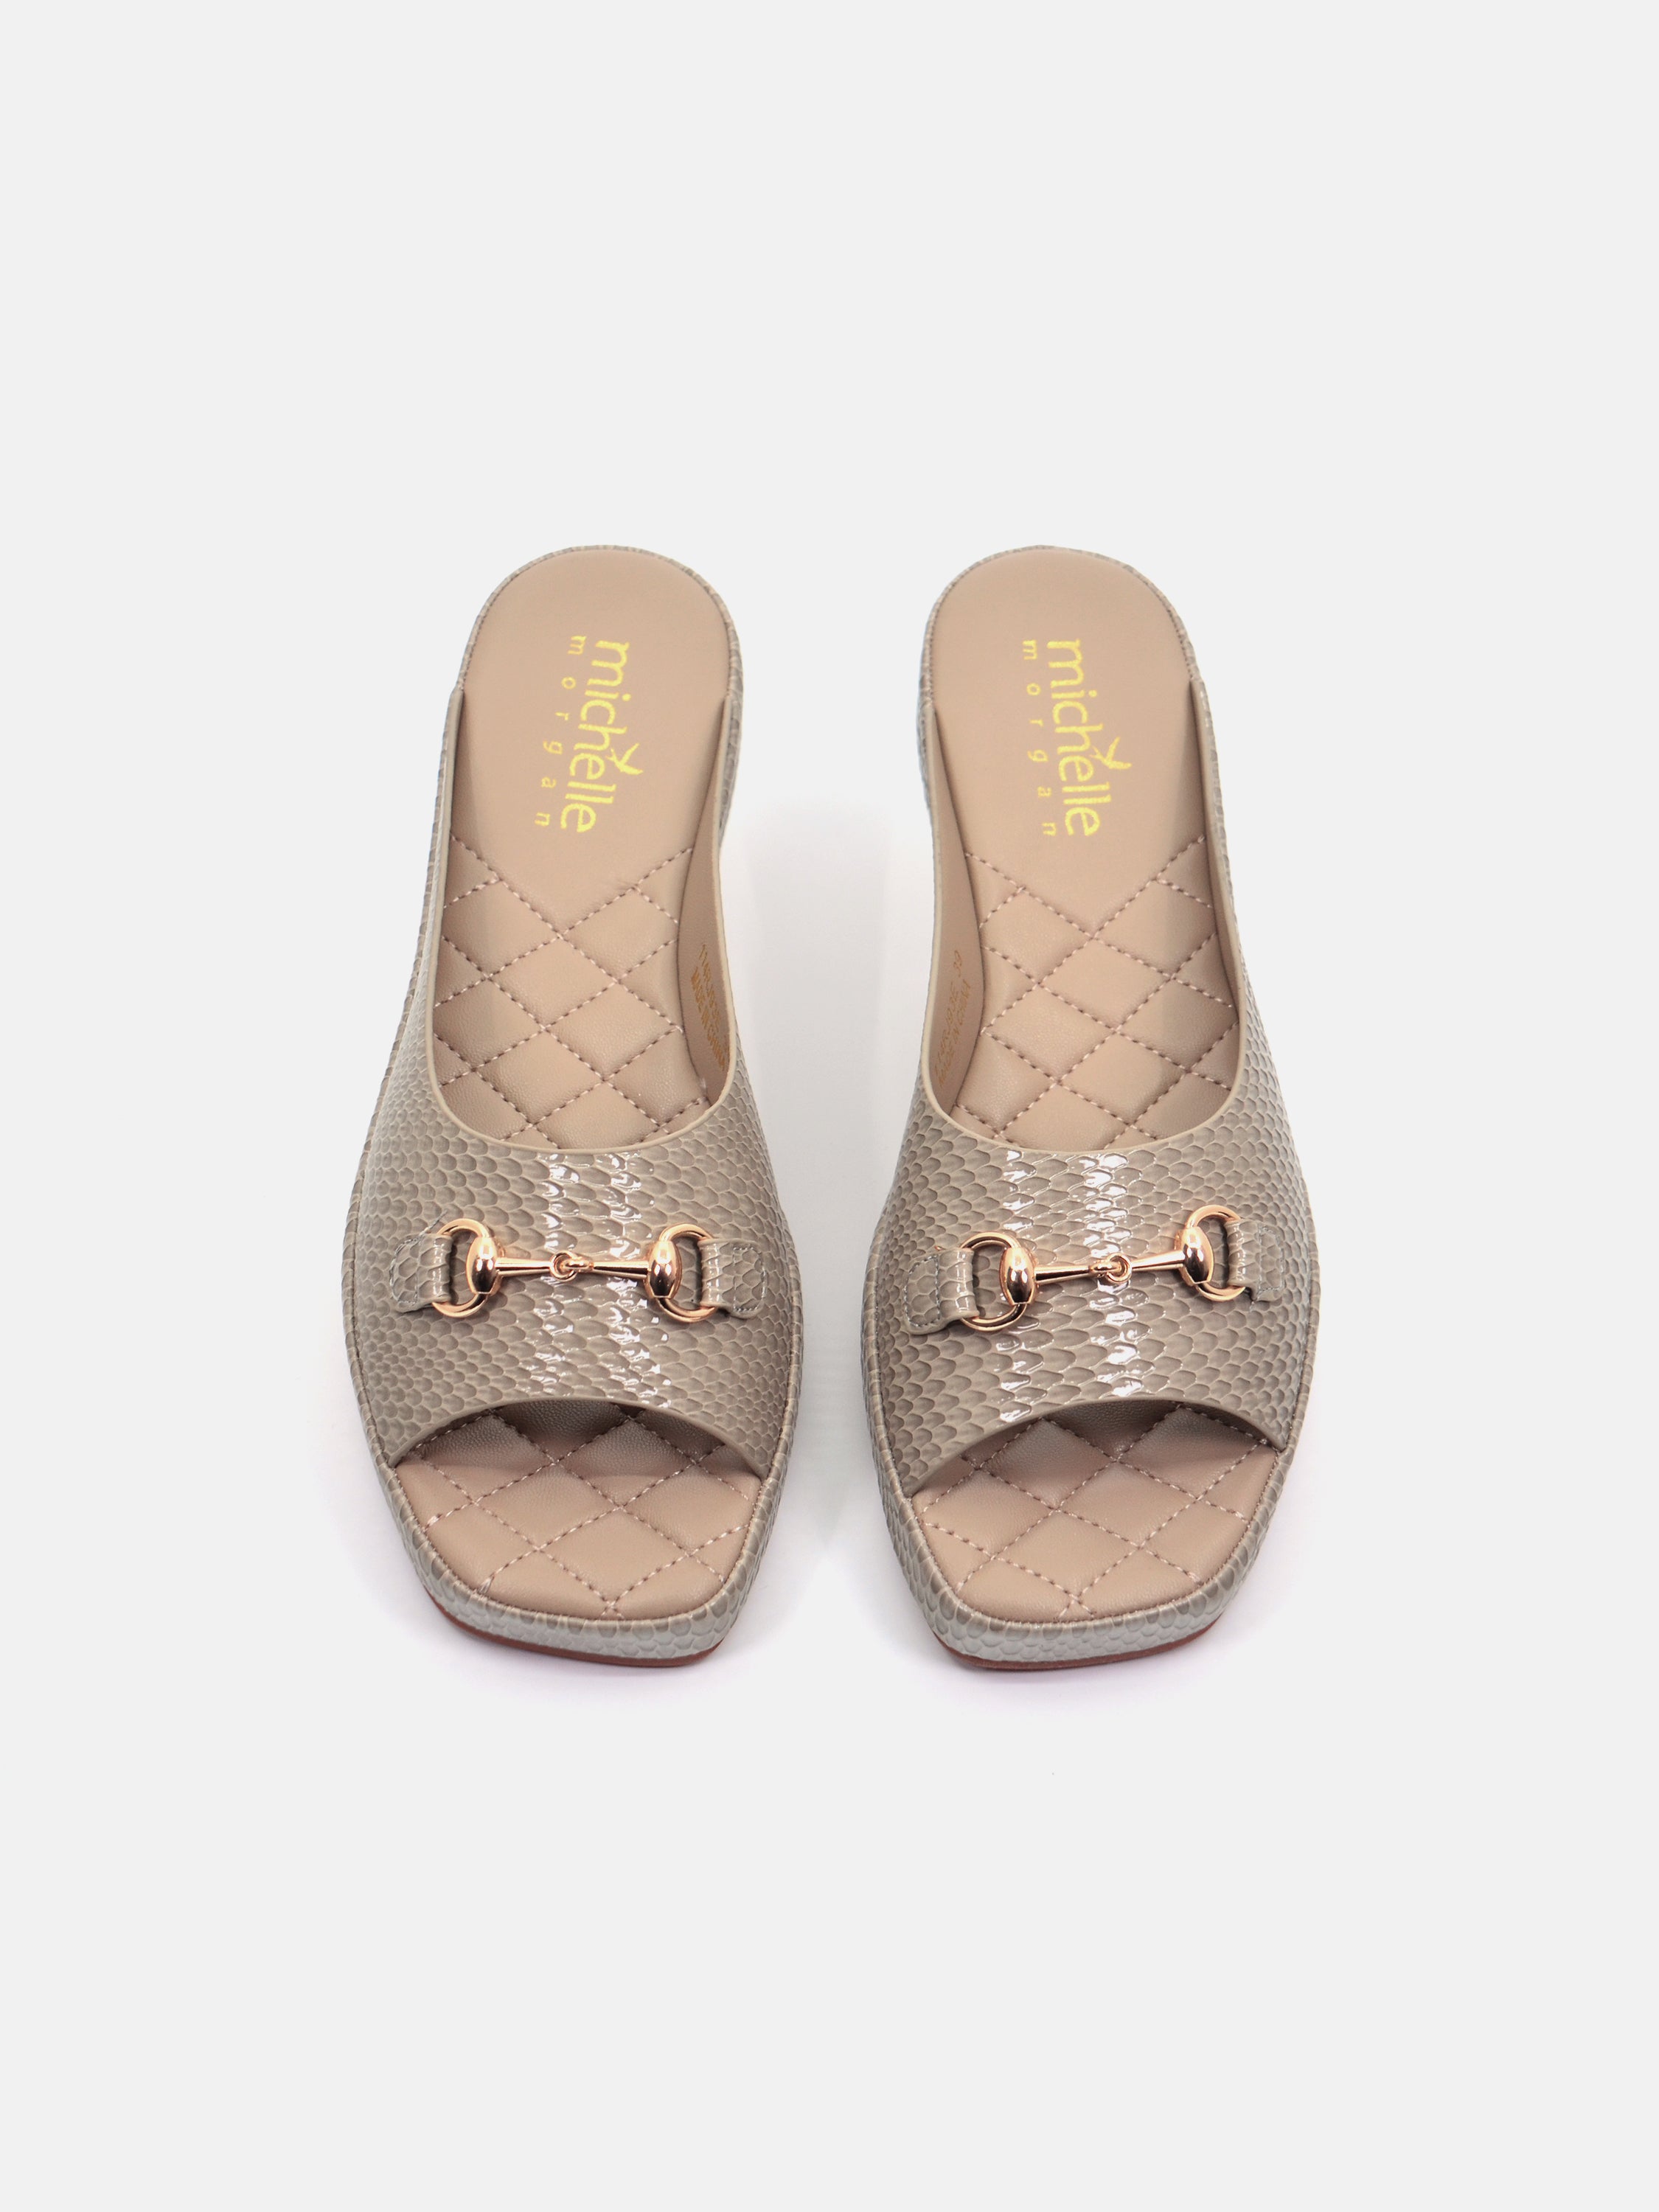 Michelle Morgan 114RJ93E Women's Flat Sandals #color_Beige